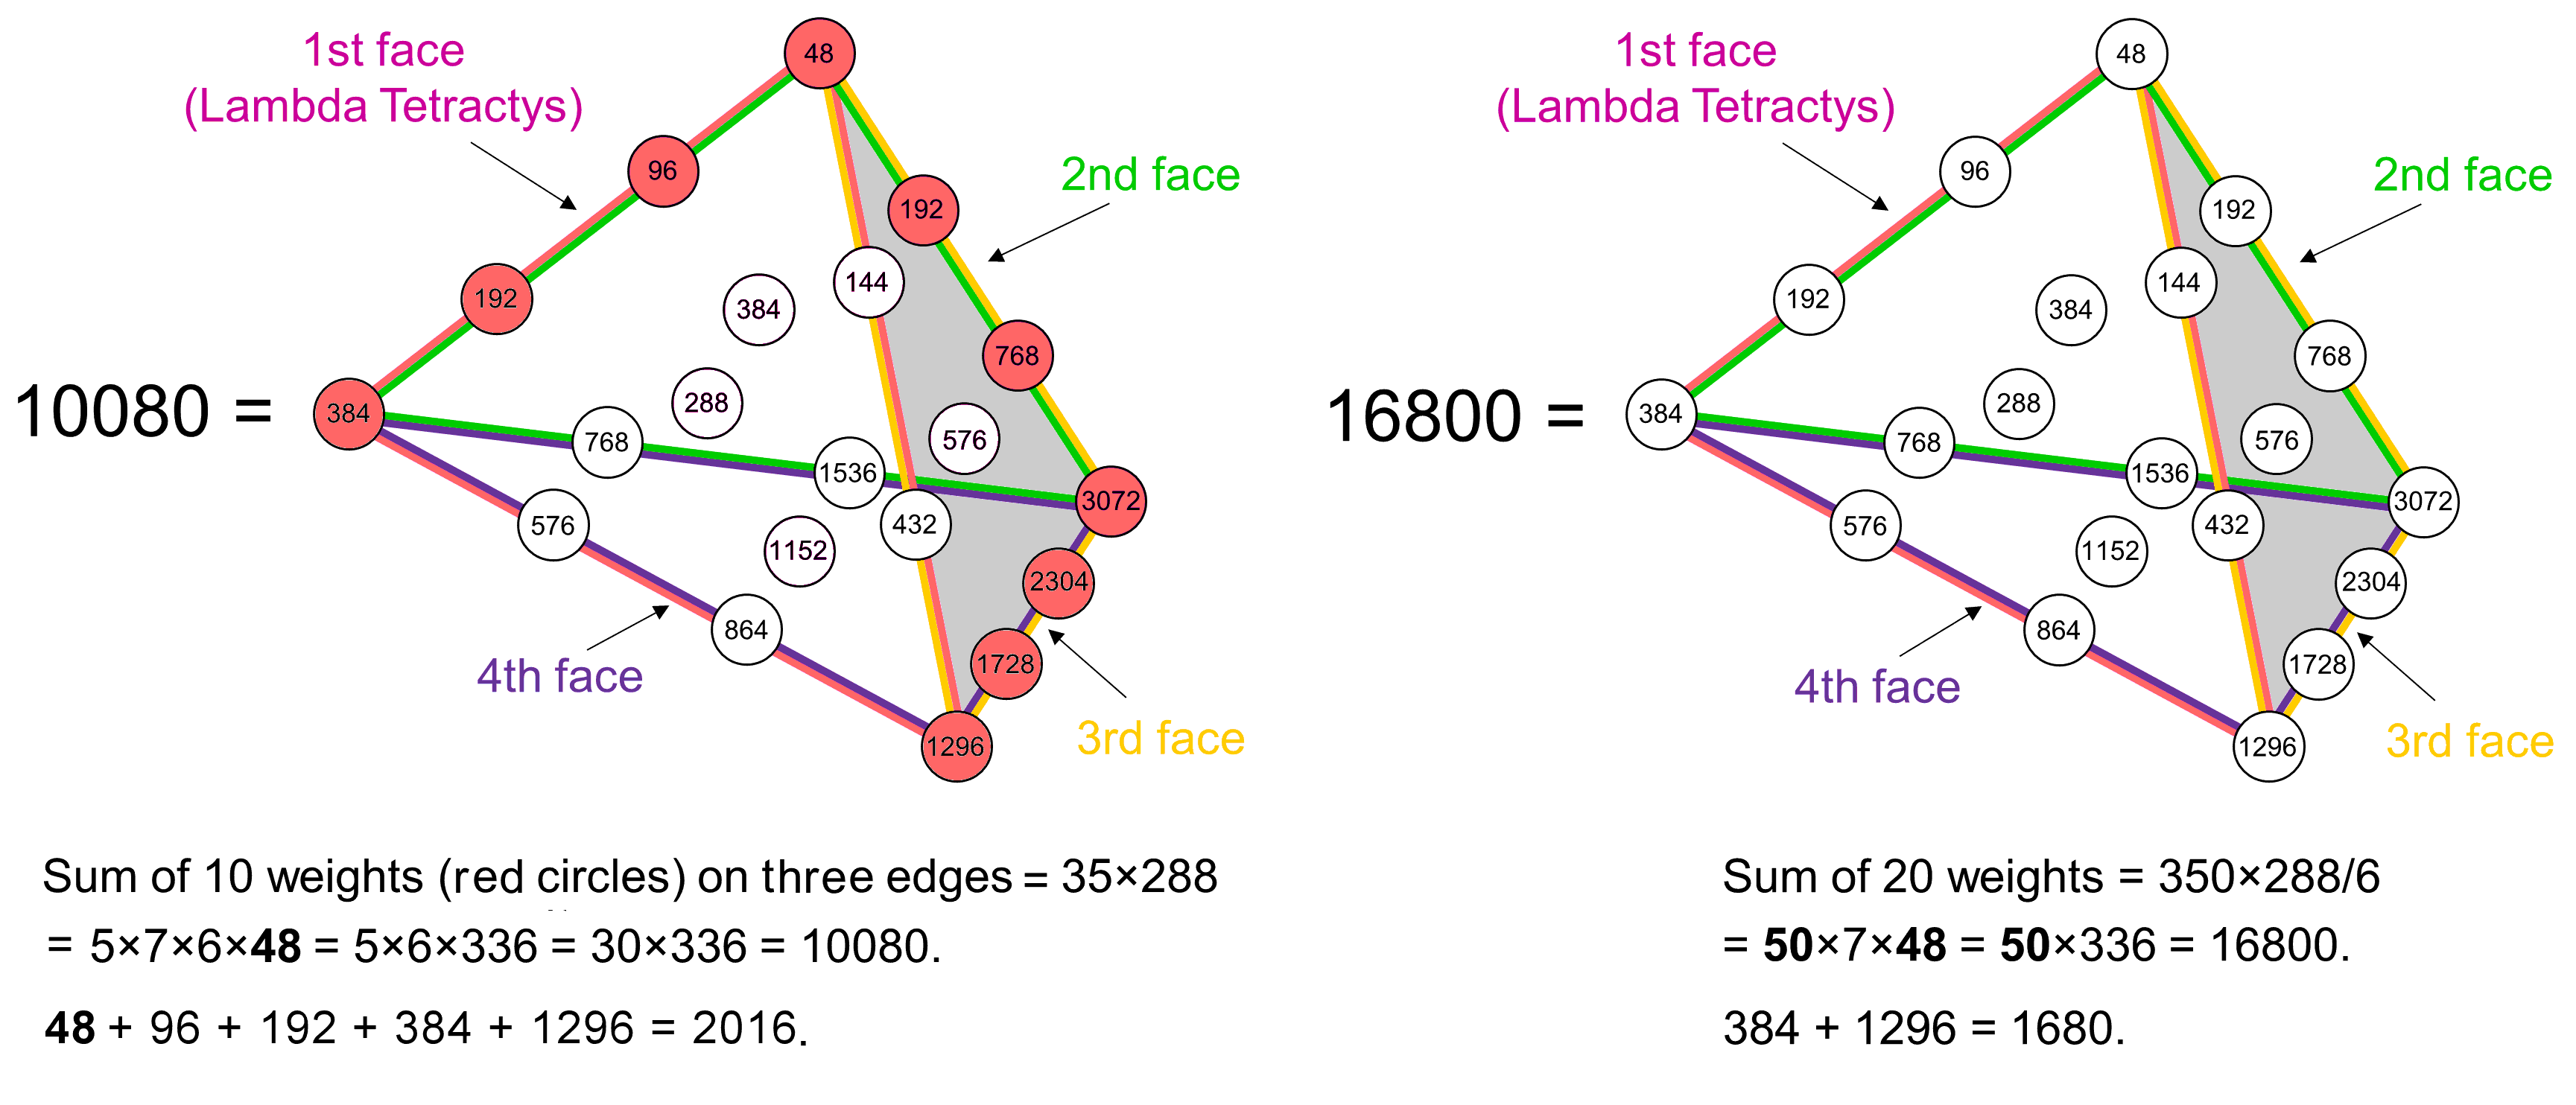 Tetrahedral Lambda representation of 10080 and 16800